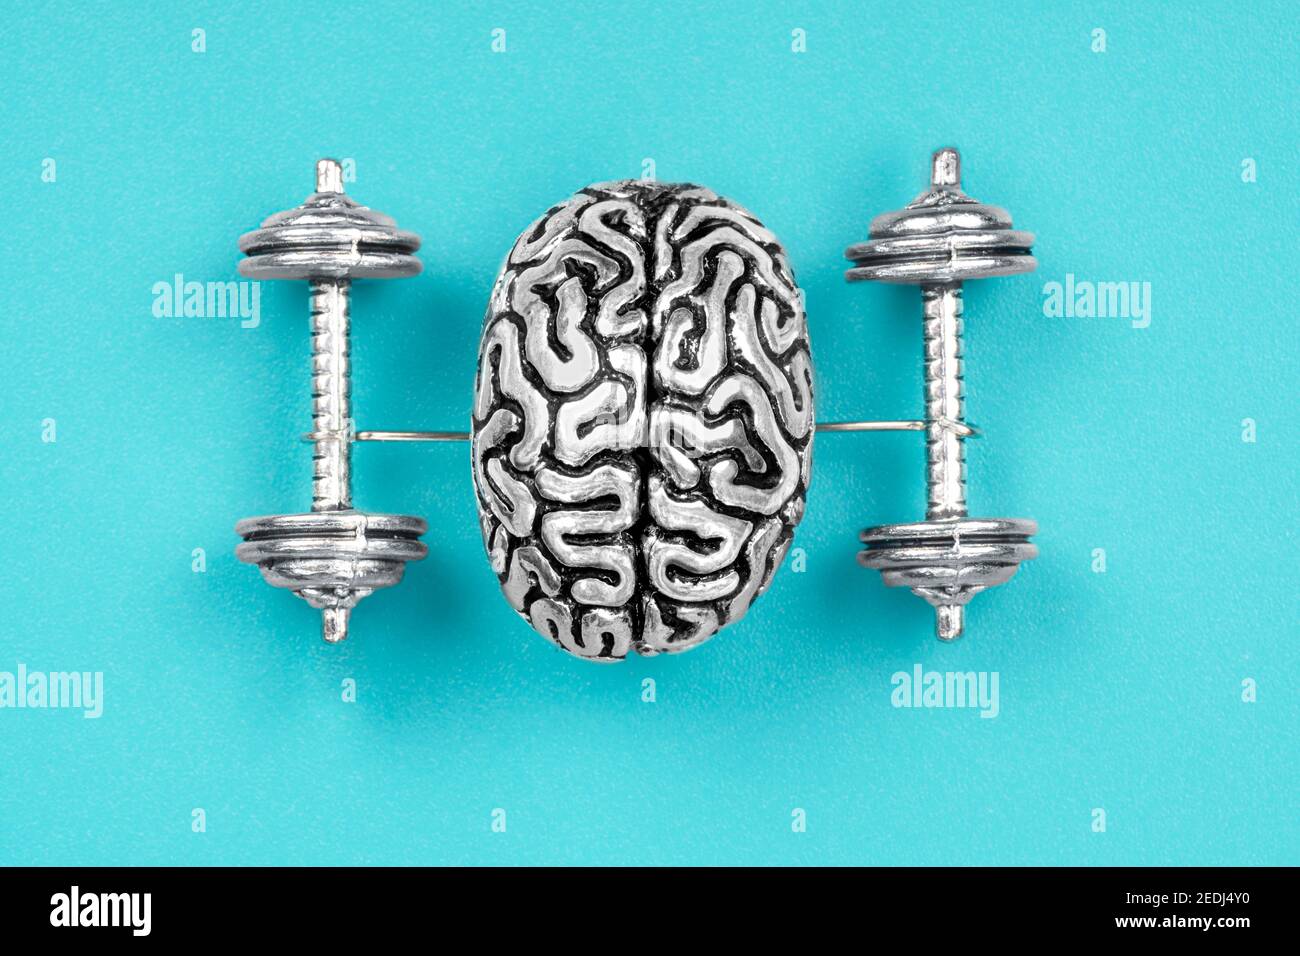 Composizione creativa fatta di una copia in acciaio di un cervello umano sollevamento manubri. Il concetto di esercizi cerebrali per rafforzare la mente. Foto Stock